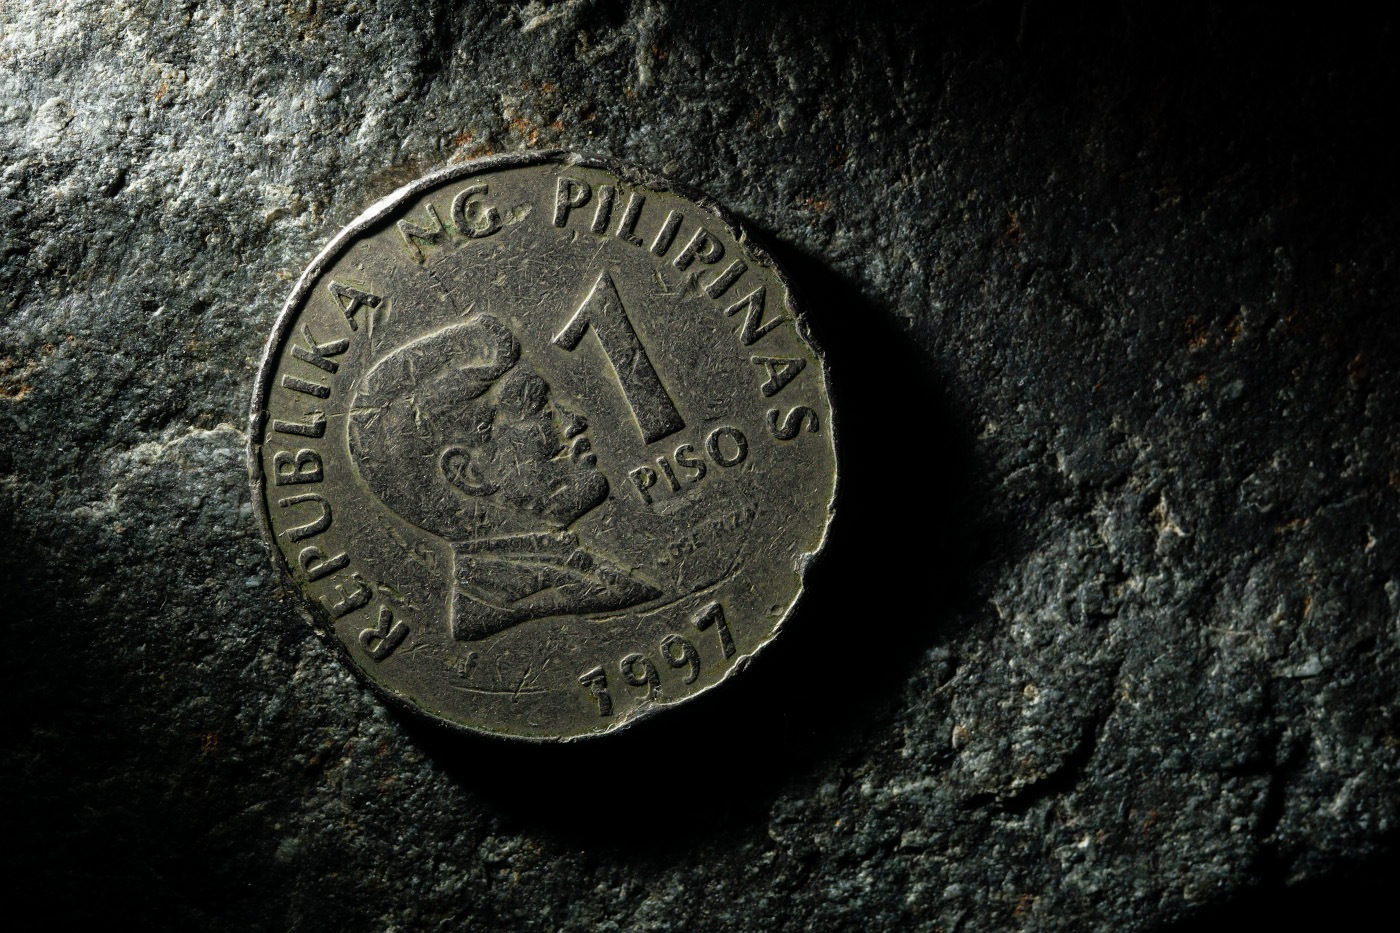 21. Пример съёмки натюрморта с монетой. Фон – натуральный камень.